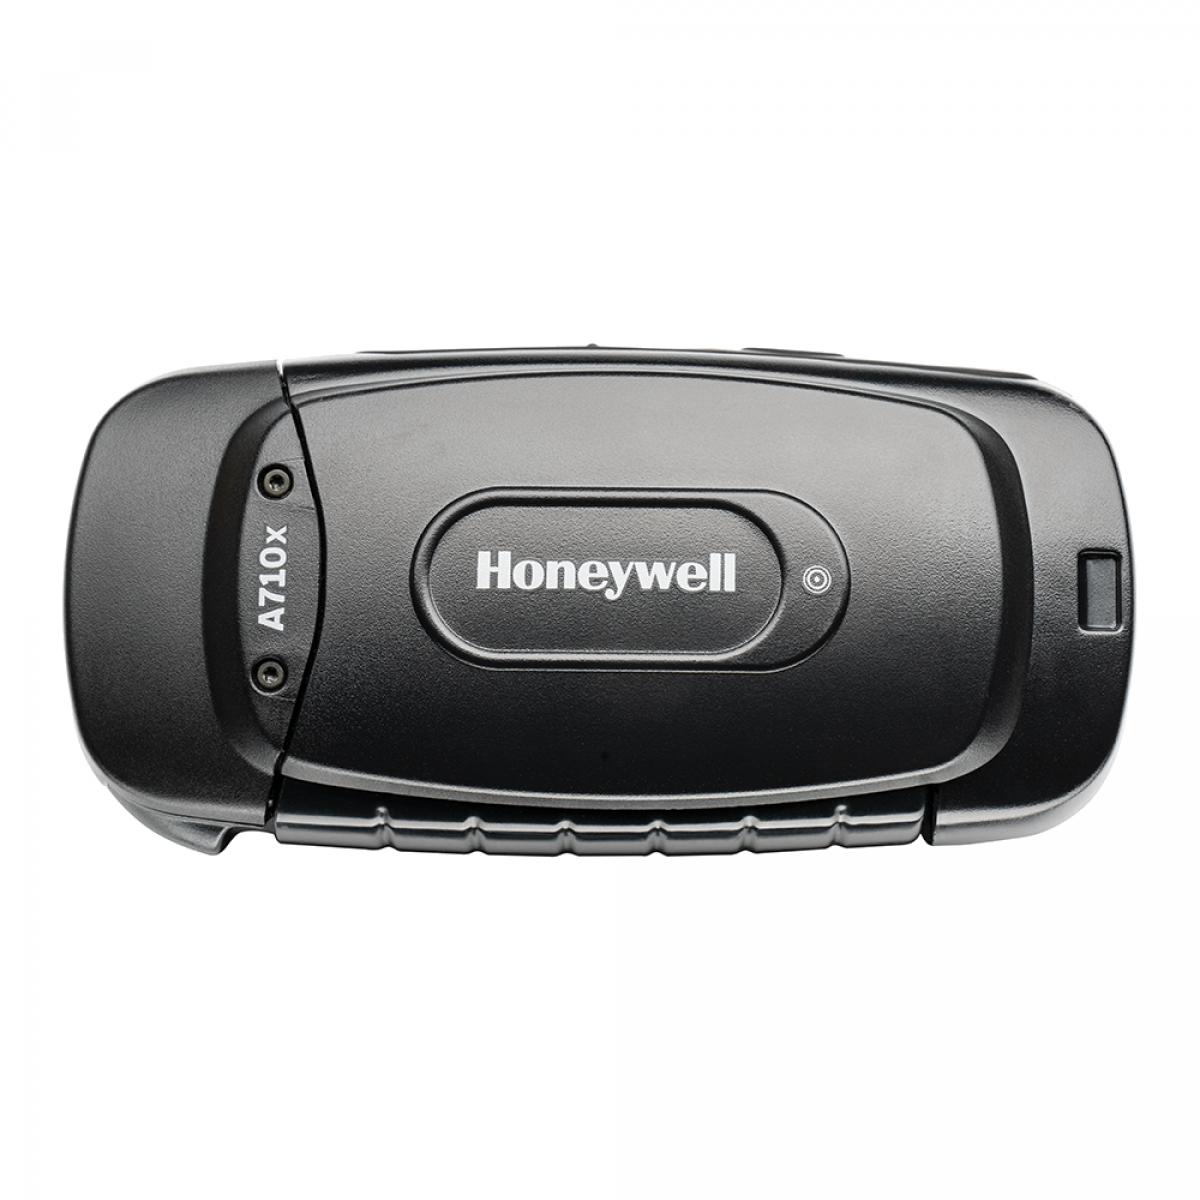 Honeywell Voice computer A710x A700x Series